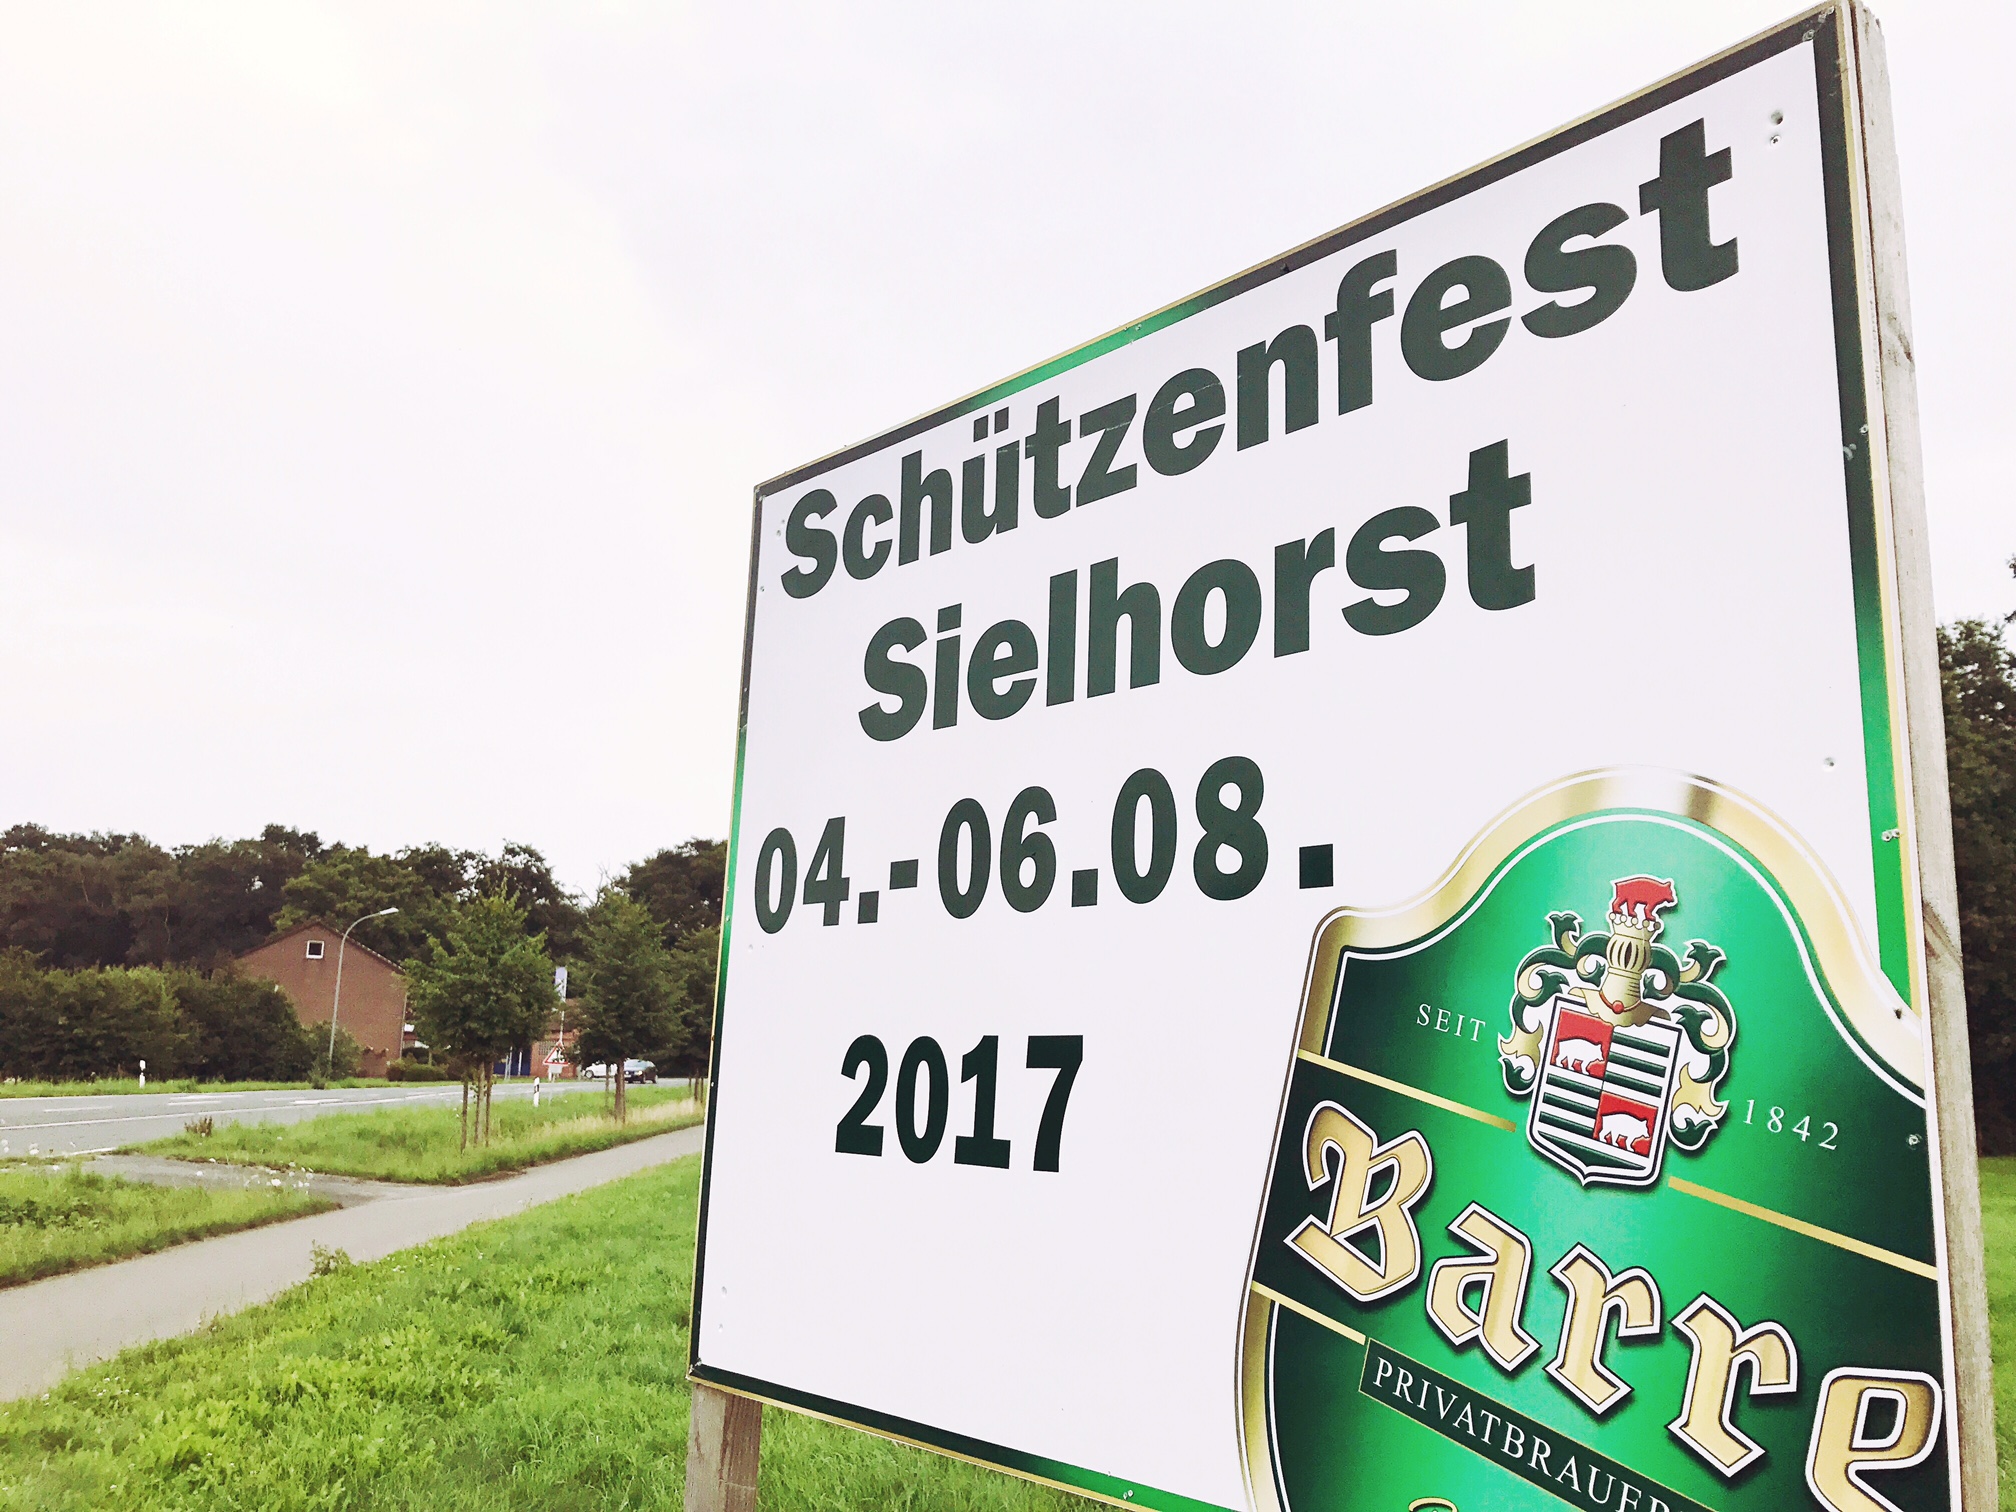 Schützenfest Sielhorst 2017: Alle Infos